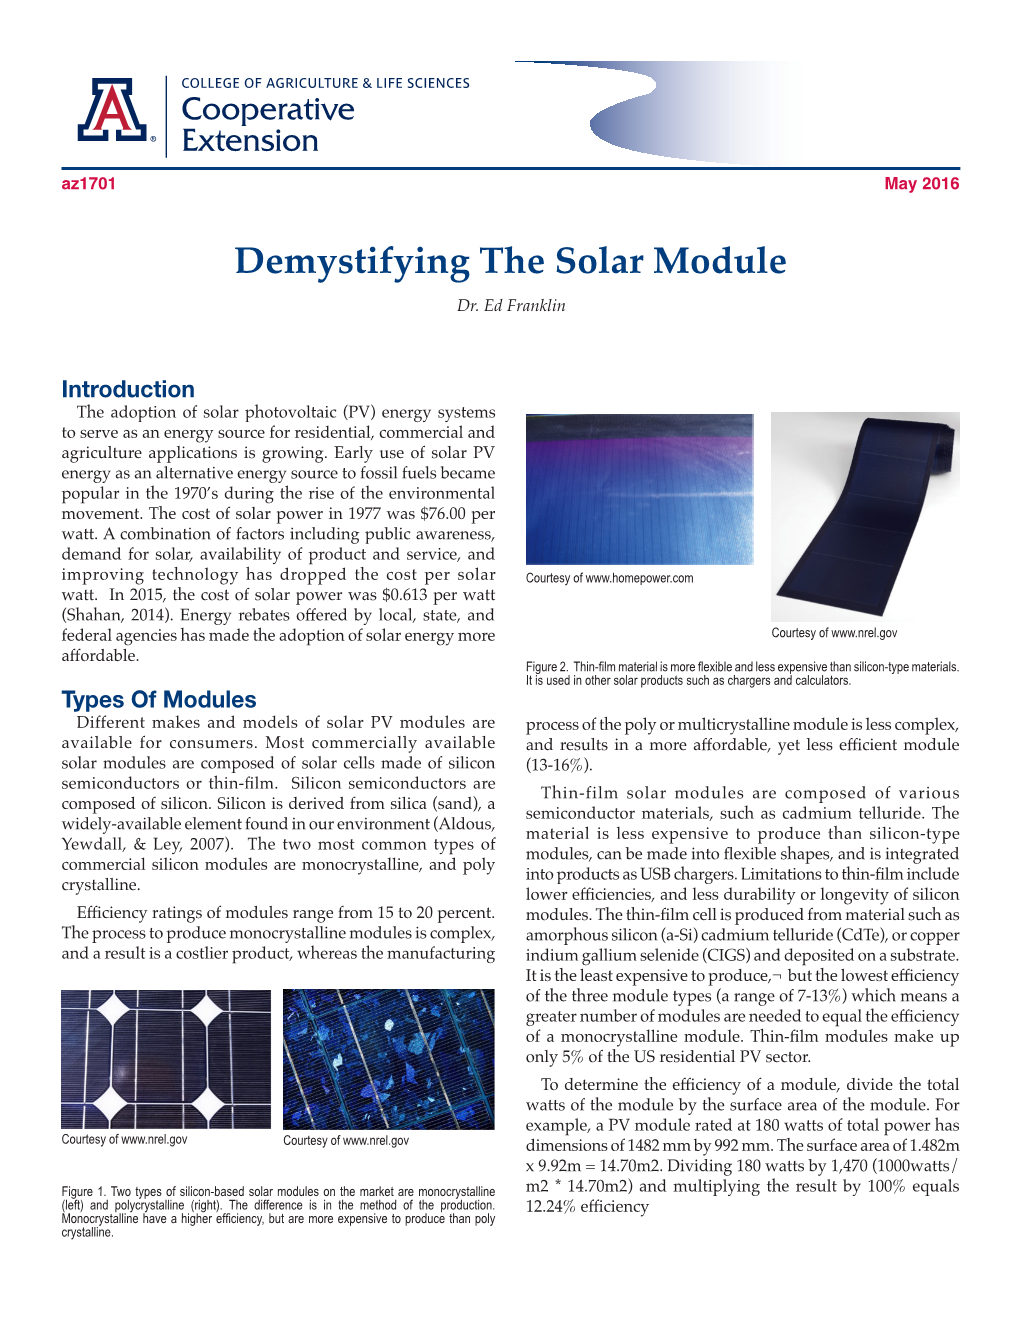 Demystifying the Solar Module Dr